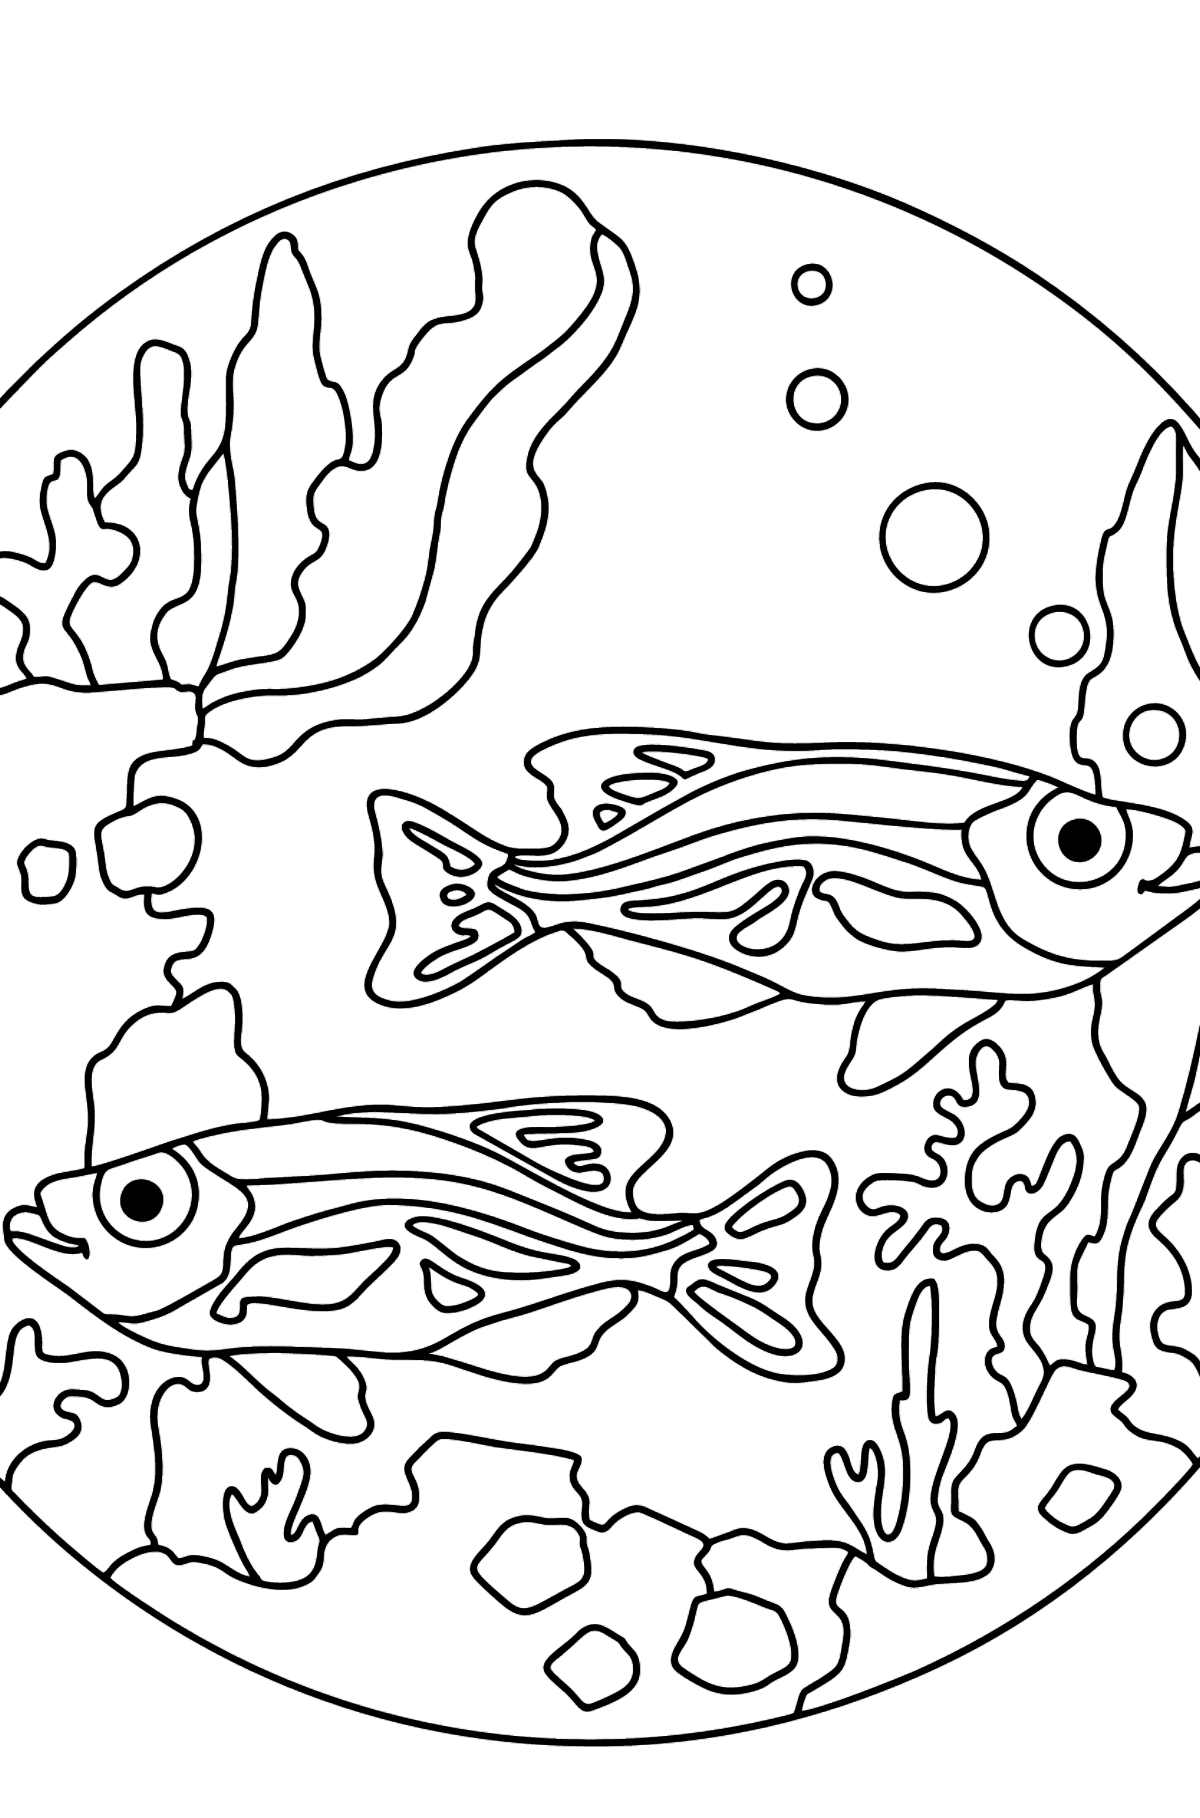 Desenho de Aquário de peixes para colorir (fácil) - Imagens para Colorir para Crianças